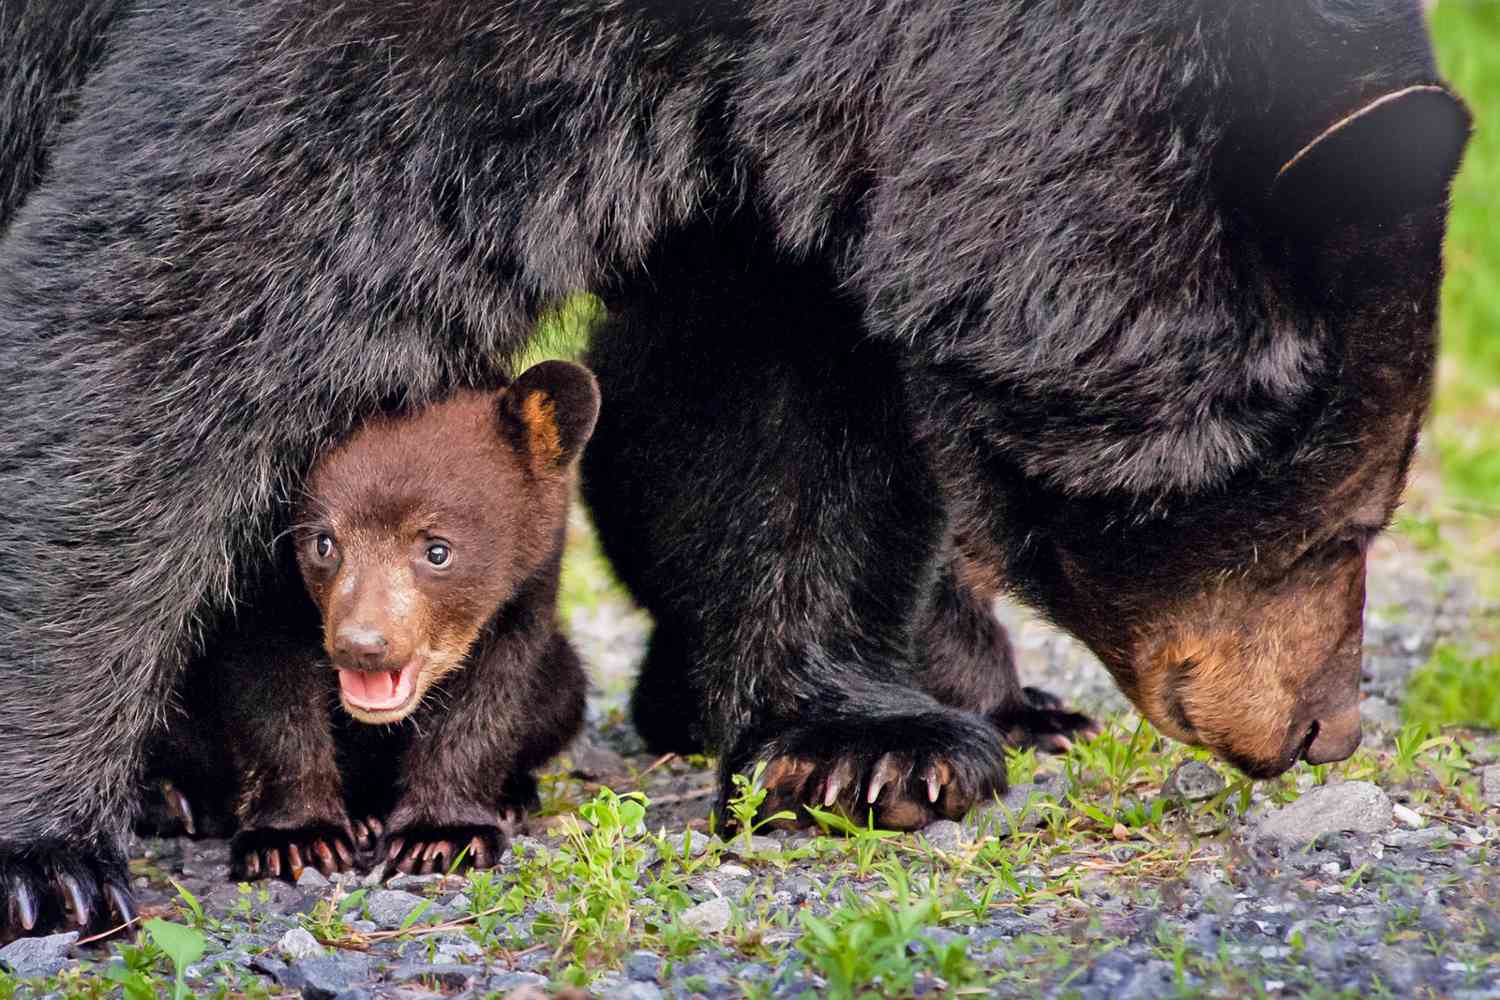 bear cub hiding in between mama bear's leg